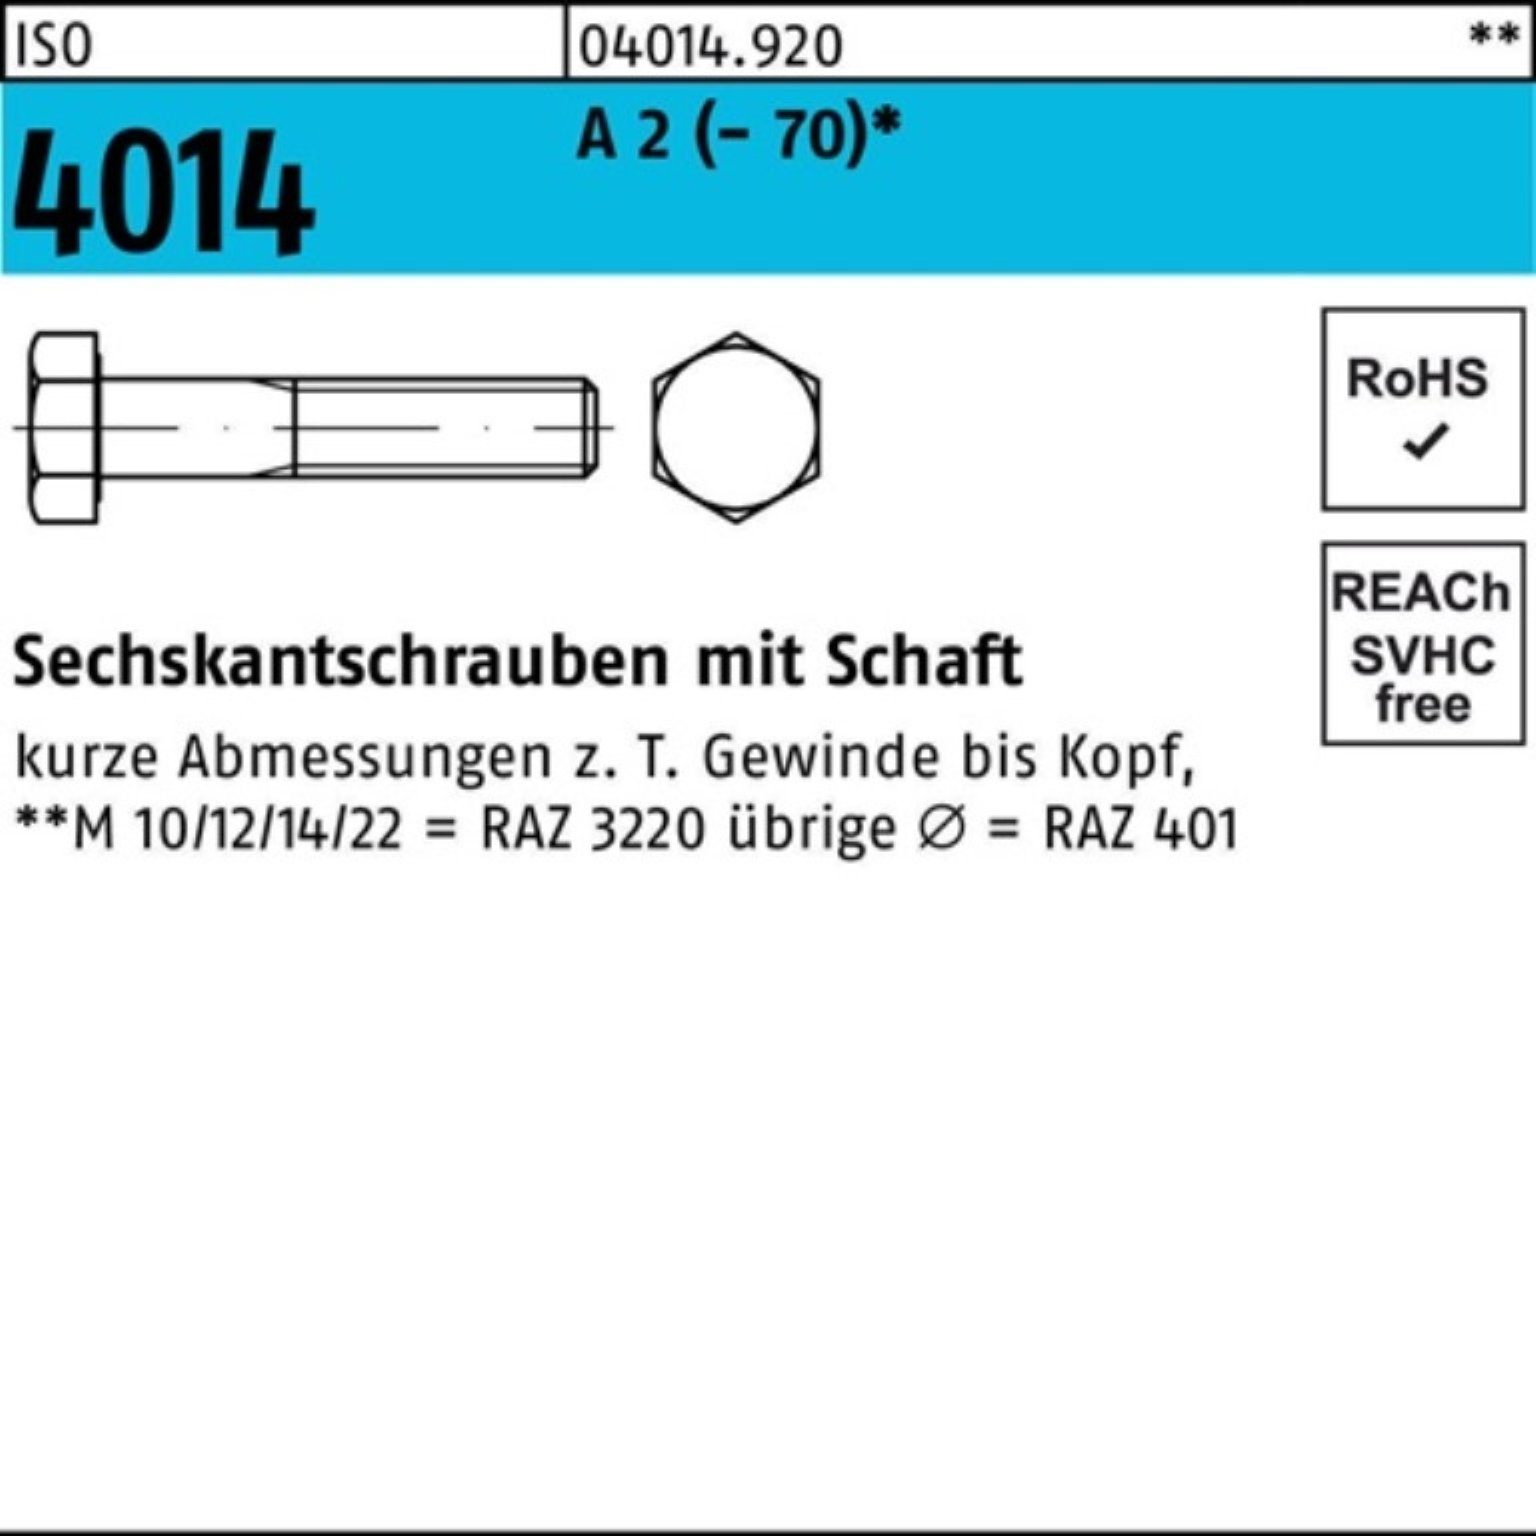 Bufab Sechskantschraube 100er Pack Sechskantschraube ISO 4014 Schaft M8x 190 A 2 (70) 25 St